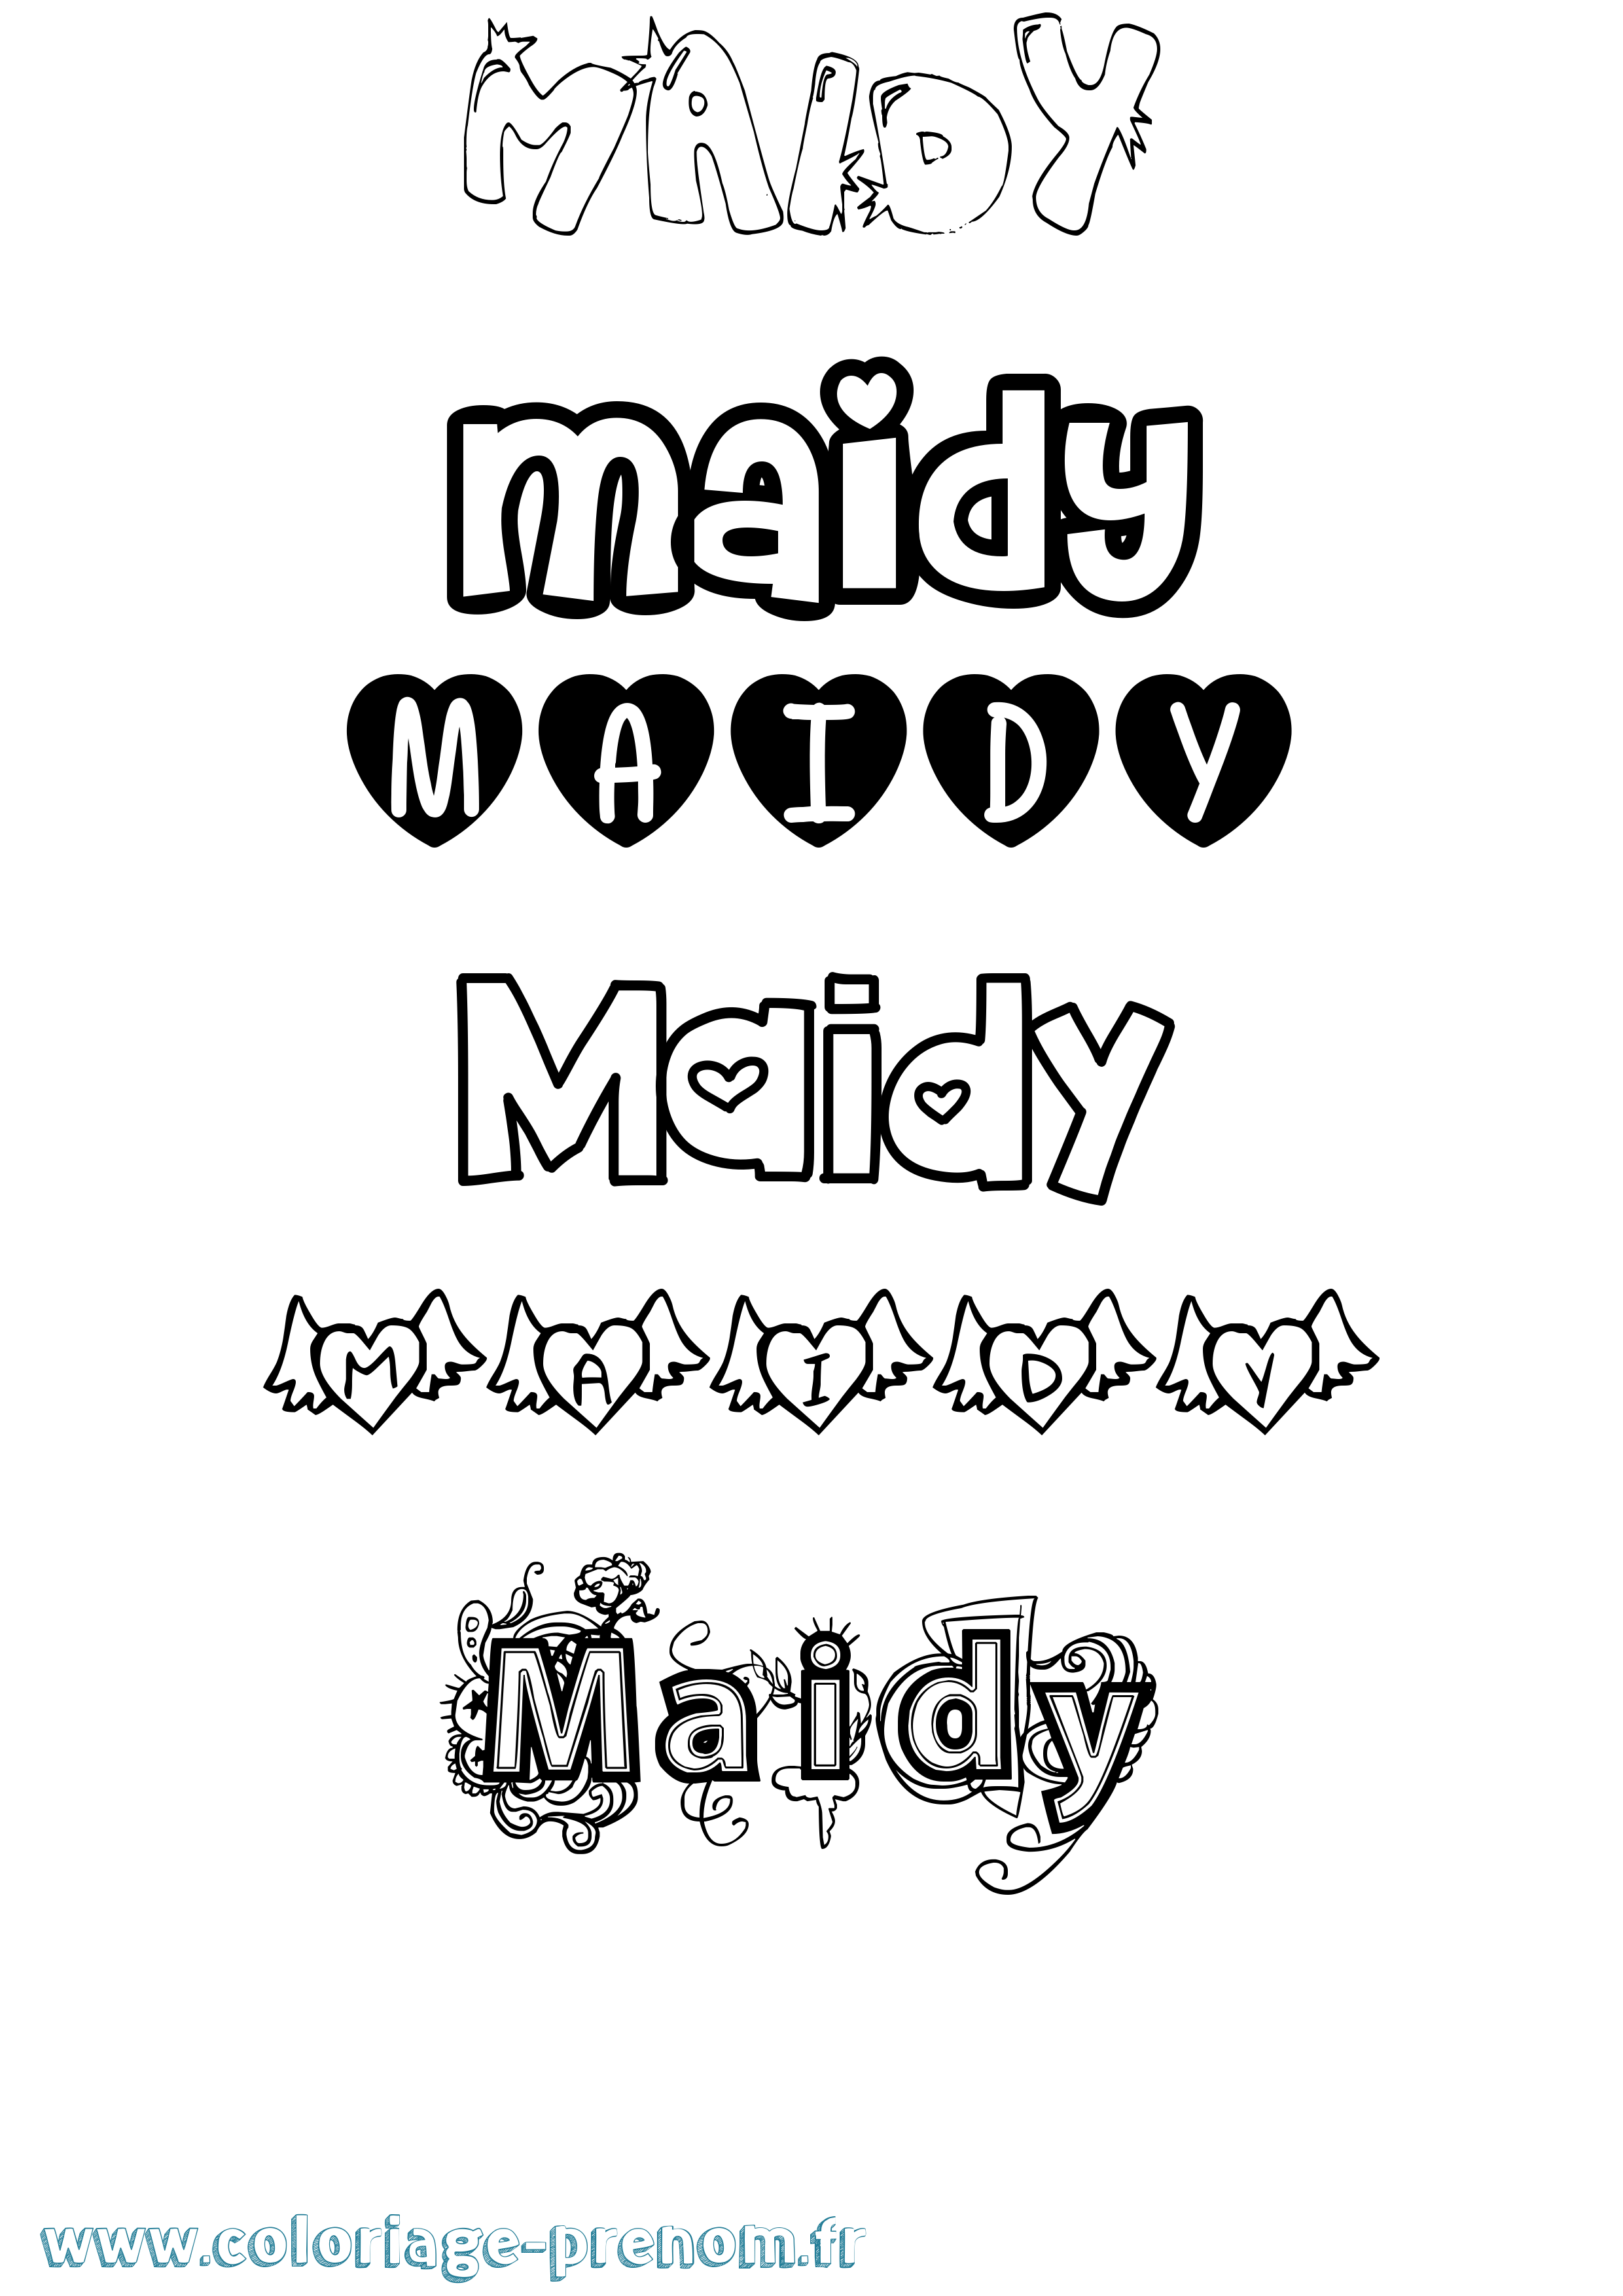 Coloriage prénom Maidy Girly